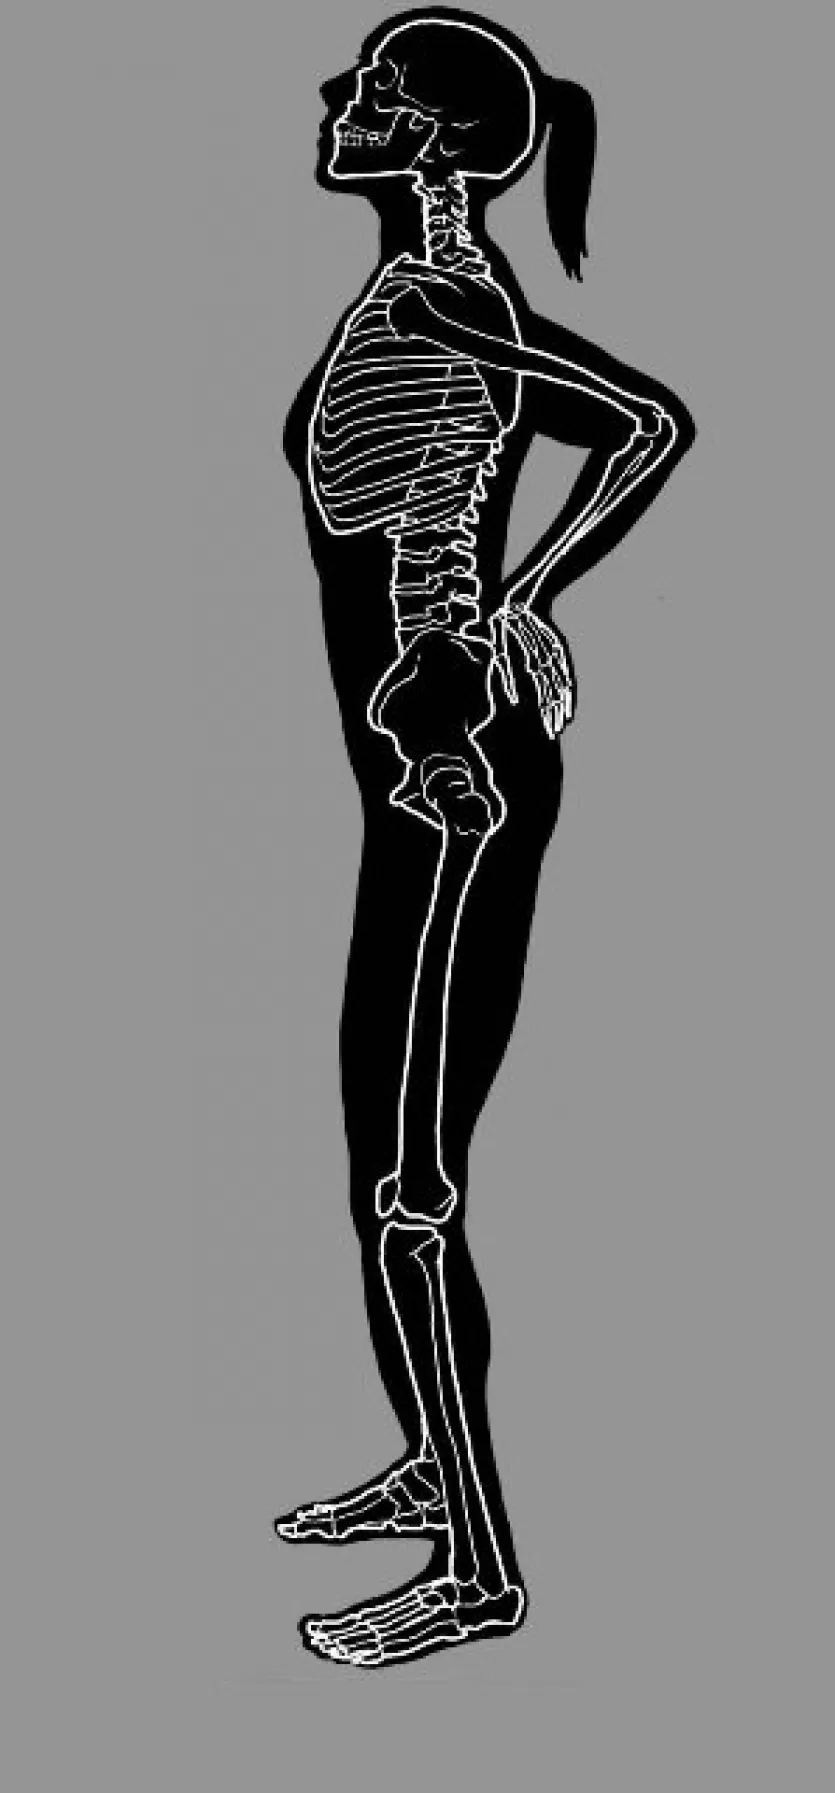 现代人类的轮廓和骨架背部疼痛用两只手的下半部分